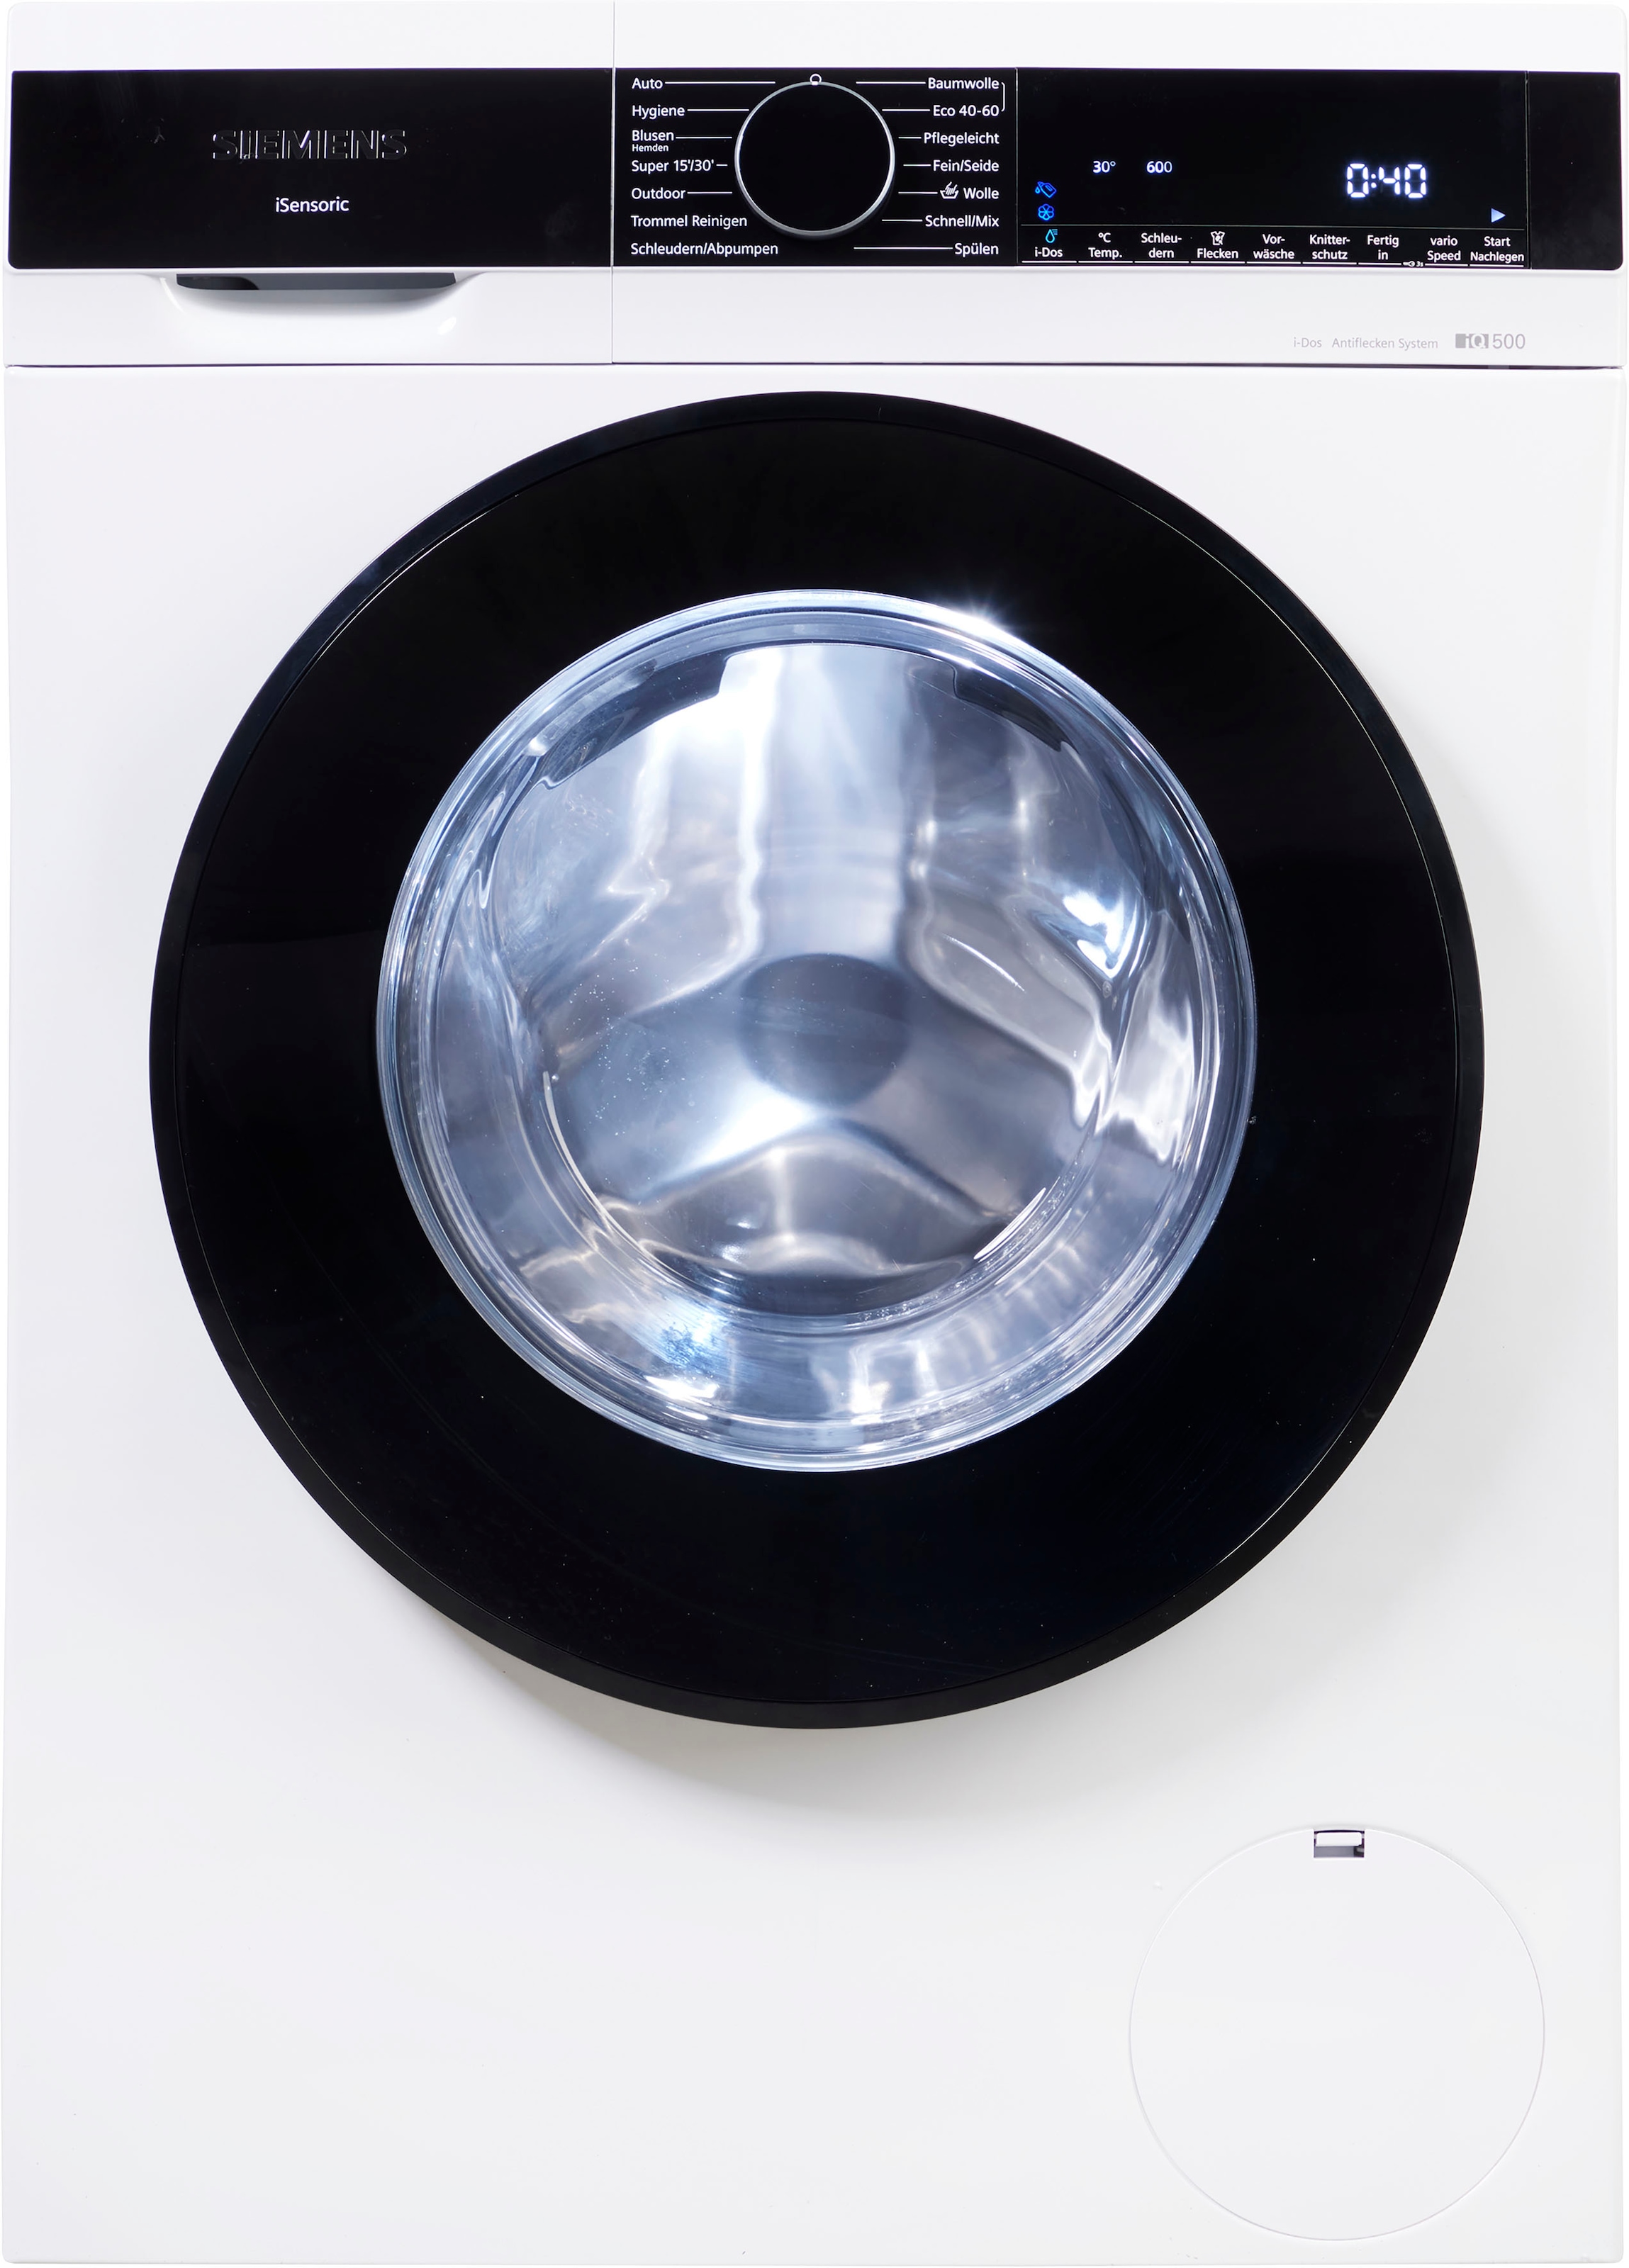 SIEMENS Waschmaschine »WG44G2A40«, WG44G2A40, 9 kg, 1400 U/min, i-Dos -  Dosierautomatik per Raten | BAUR